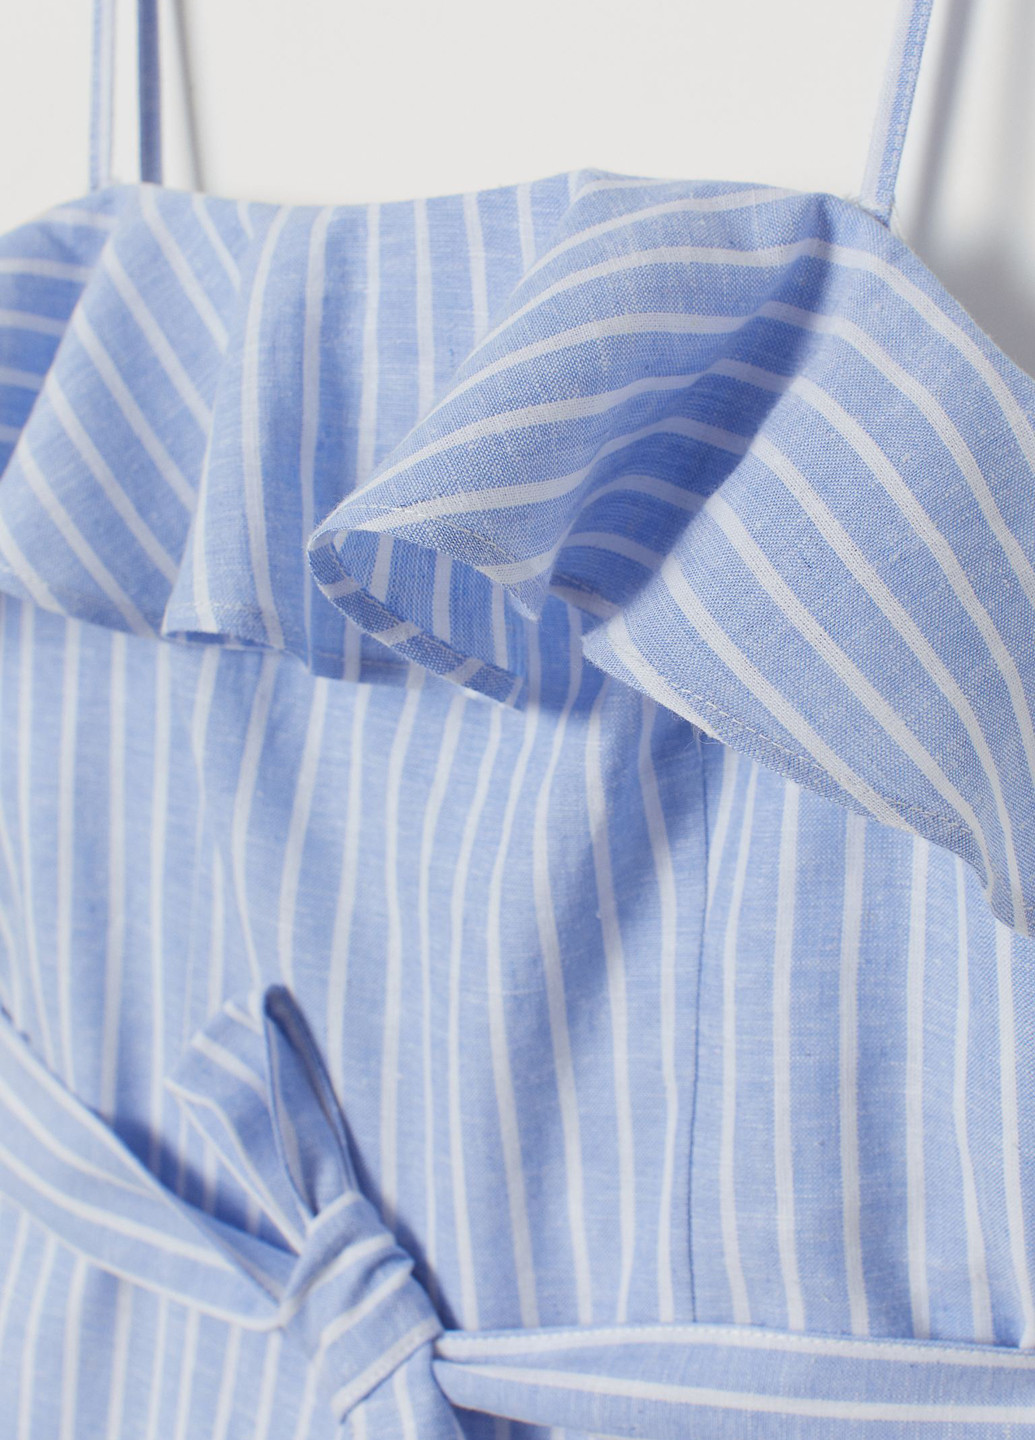 Комбинезон H&M комбинезон-шорты полоска голубой кэжуал лен